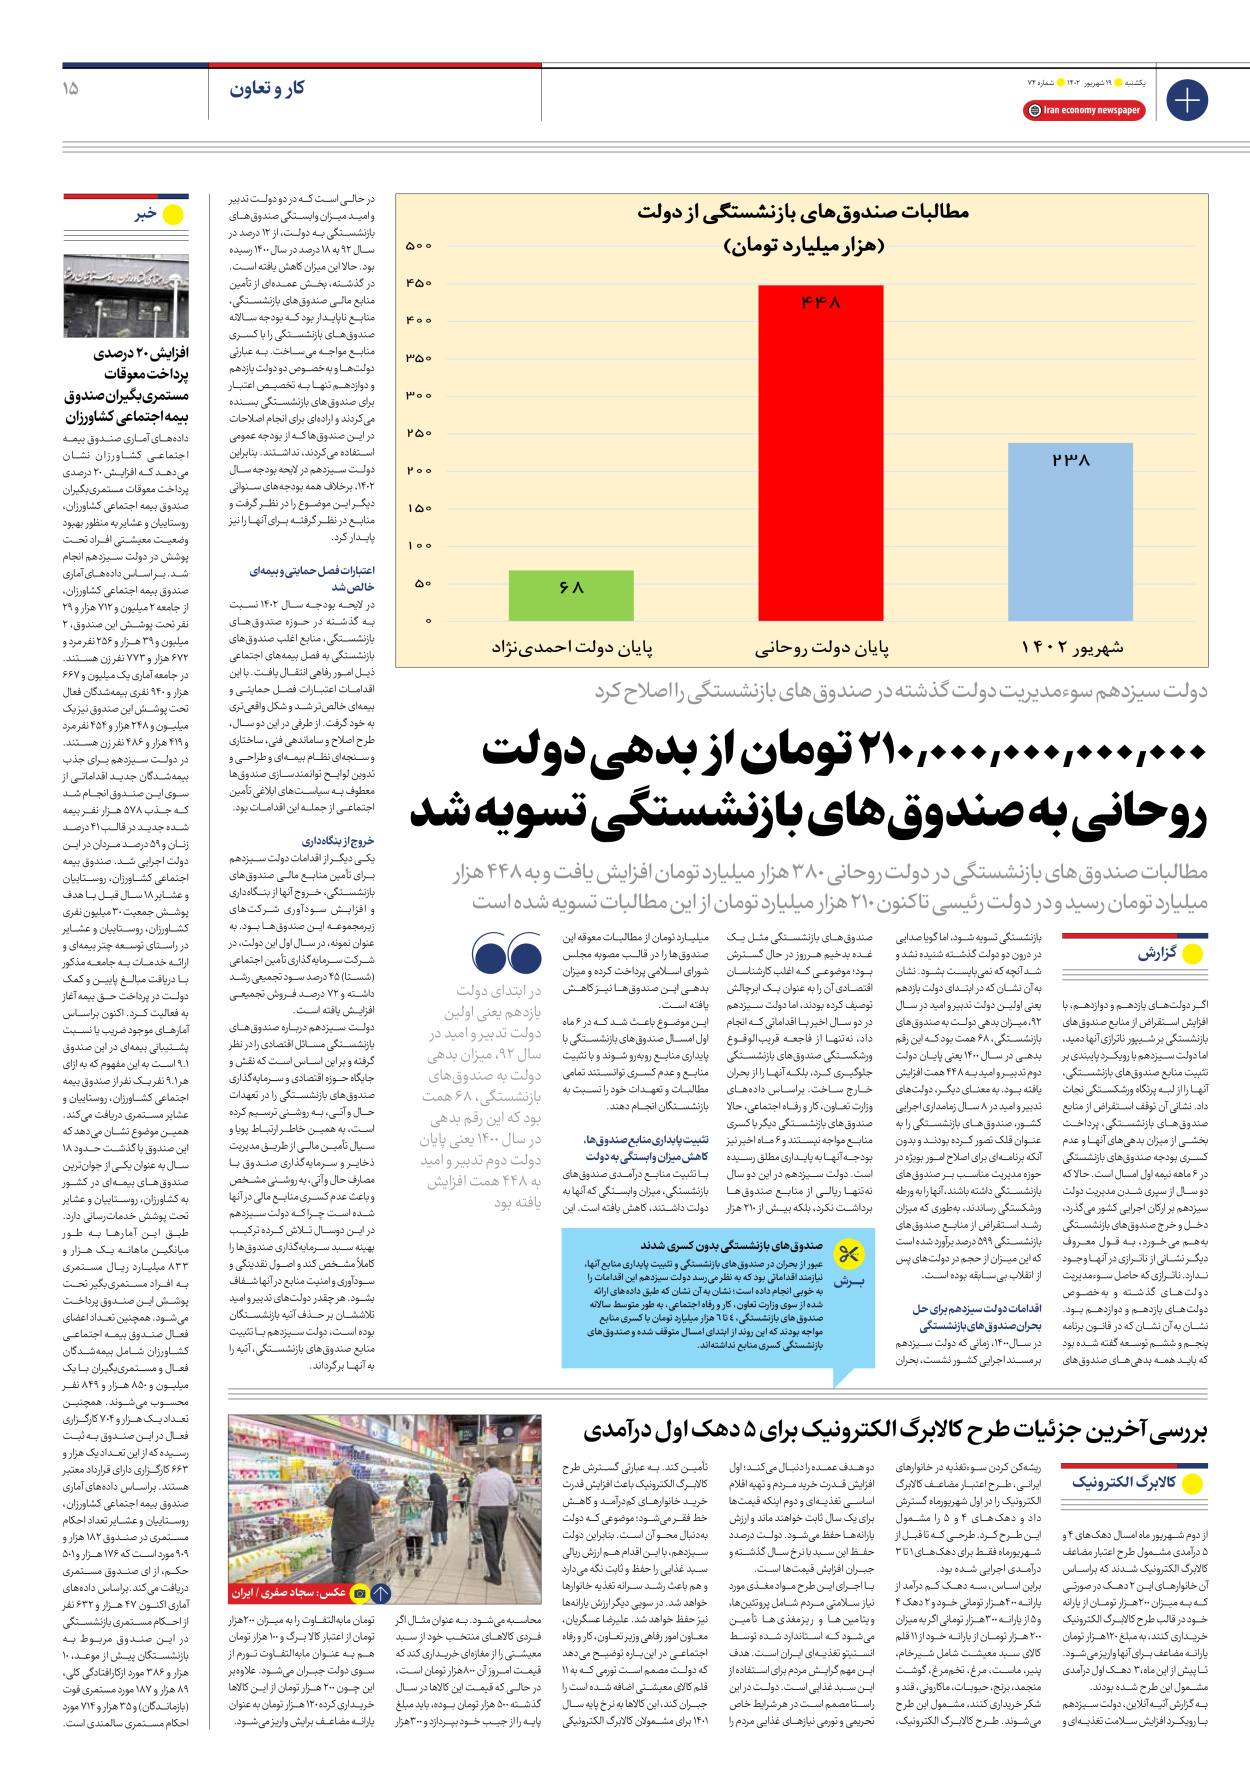 روزنامه ایران اقتصادی - شماره هفتاد و چهار - ۱۹ شهریور ۱۴۰۲ - صفحه ۱۵